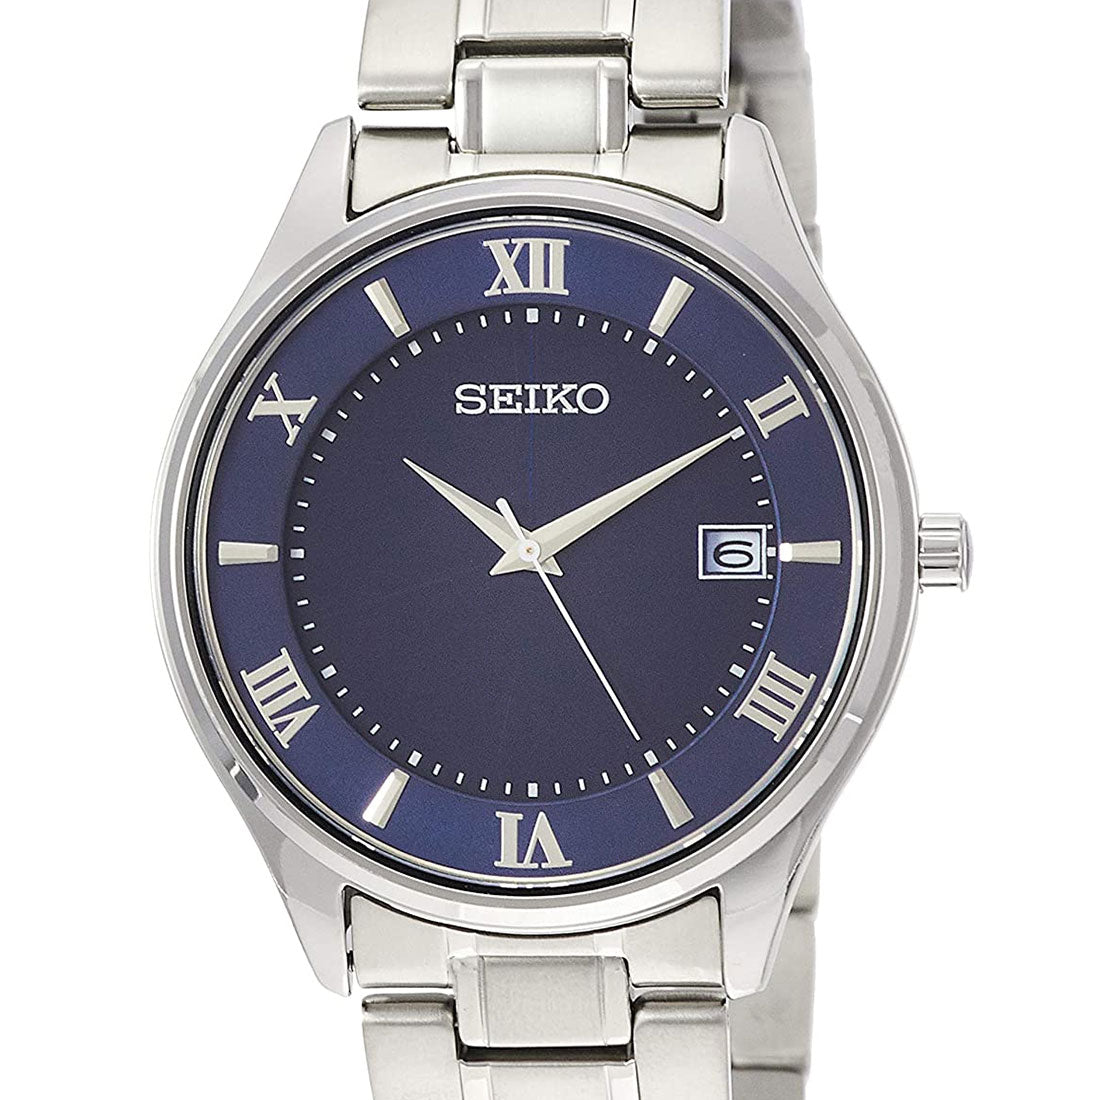 Seiko Selection Titanium JDM Watch SBPX115 -Seiko